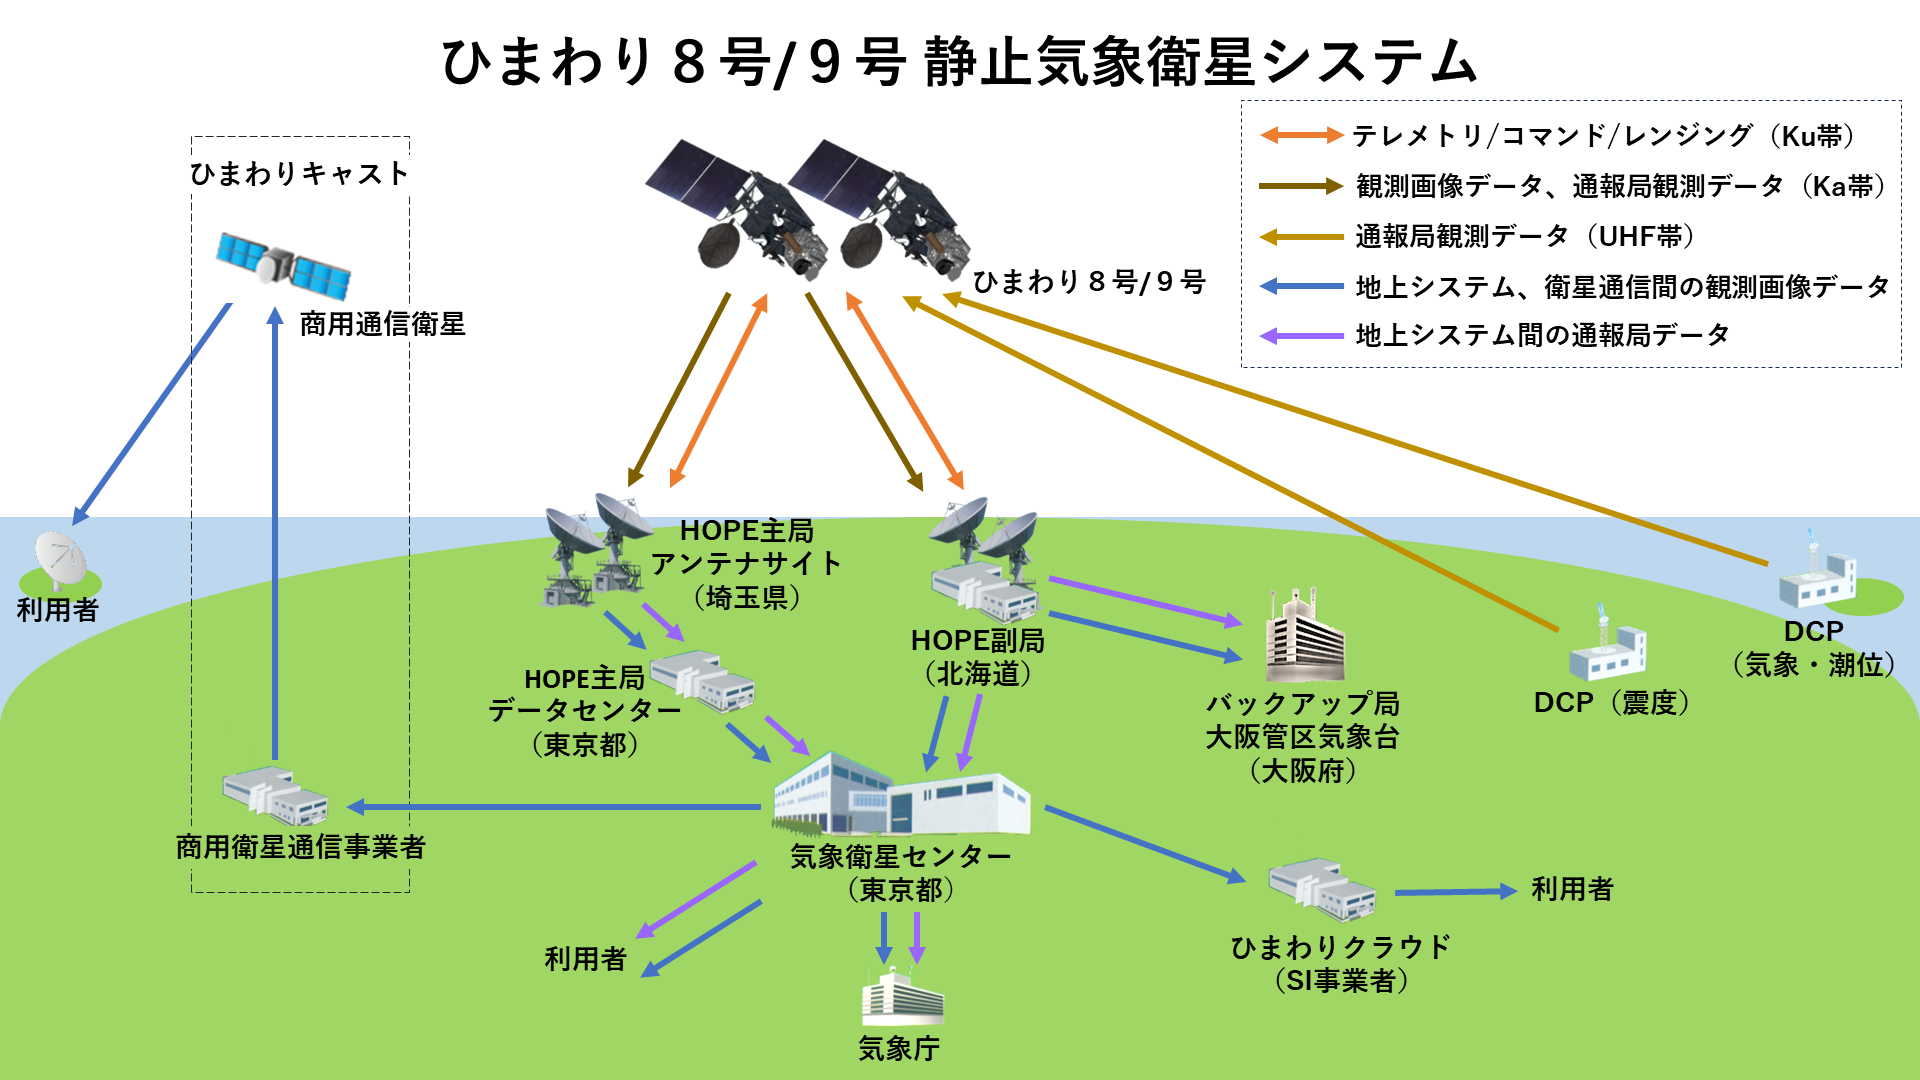 ひまわり8号/9号 静止気象衛星システム全体構成図